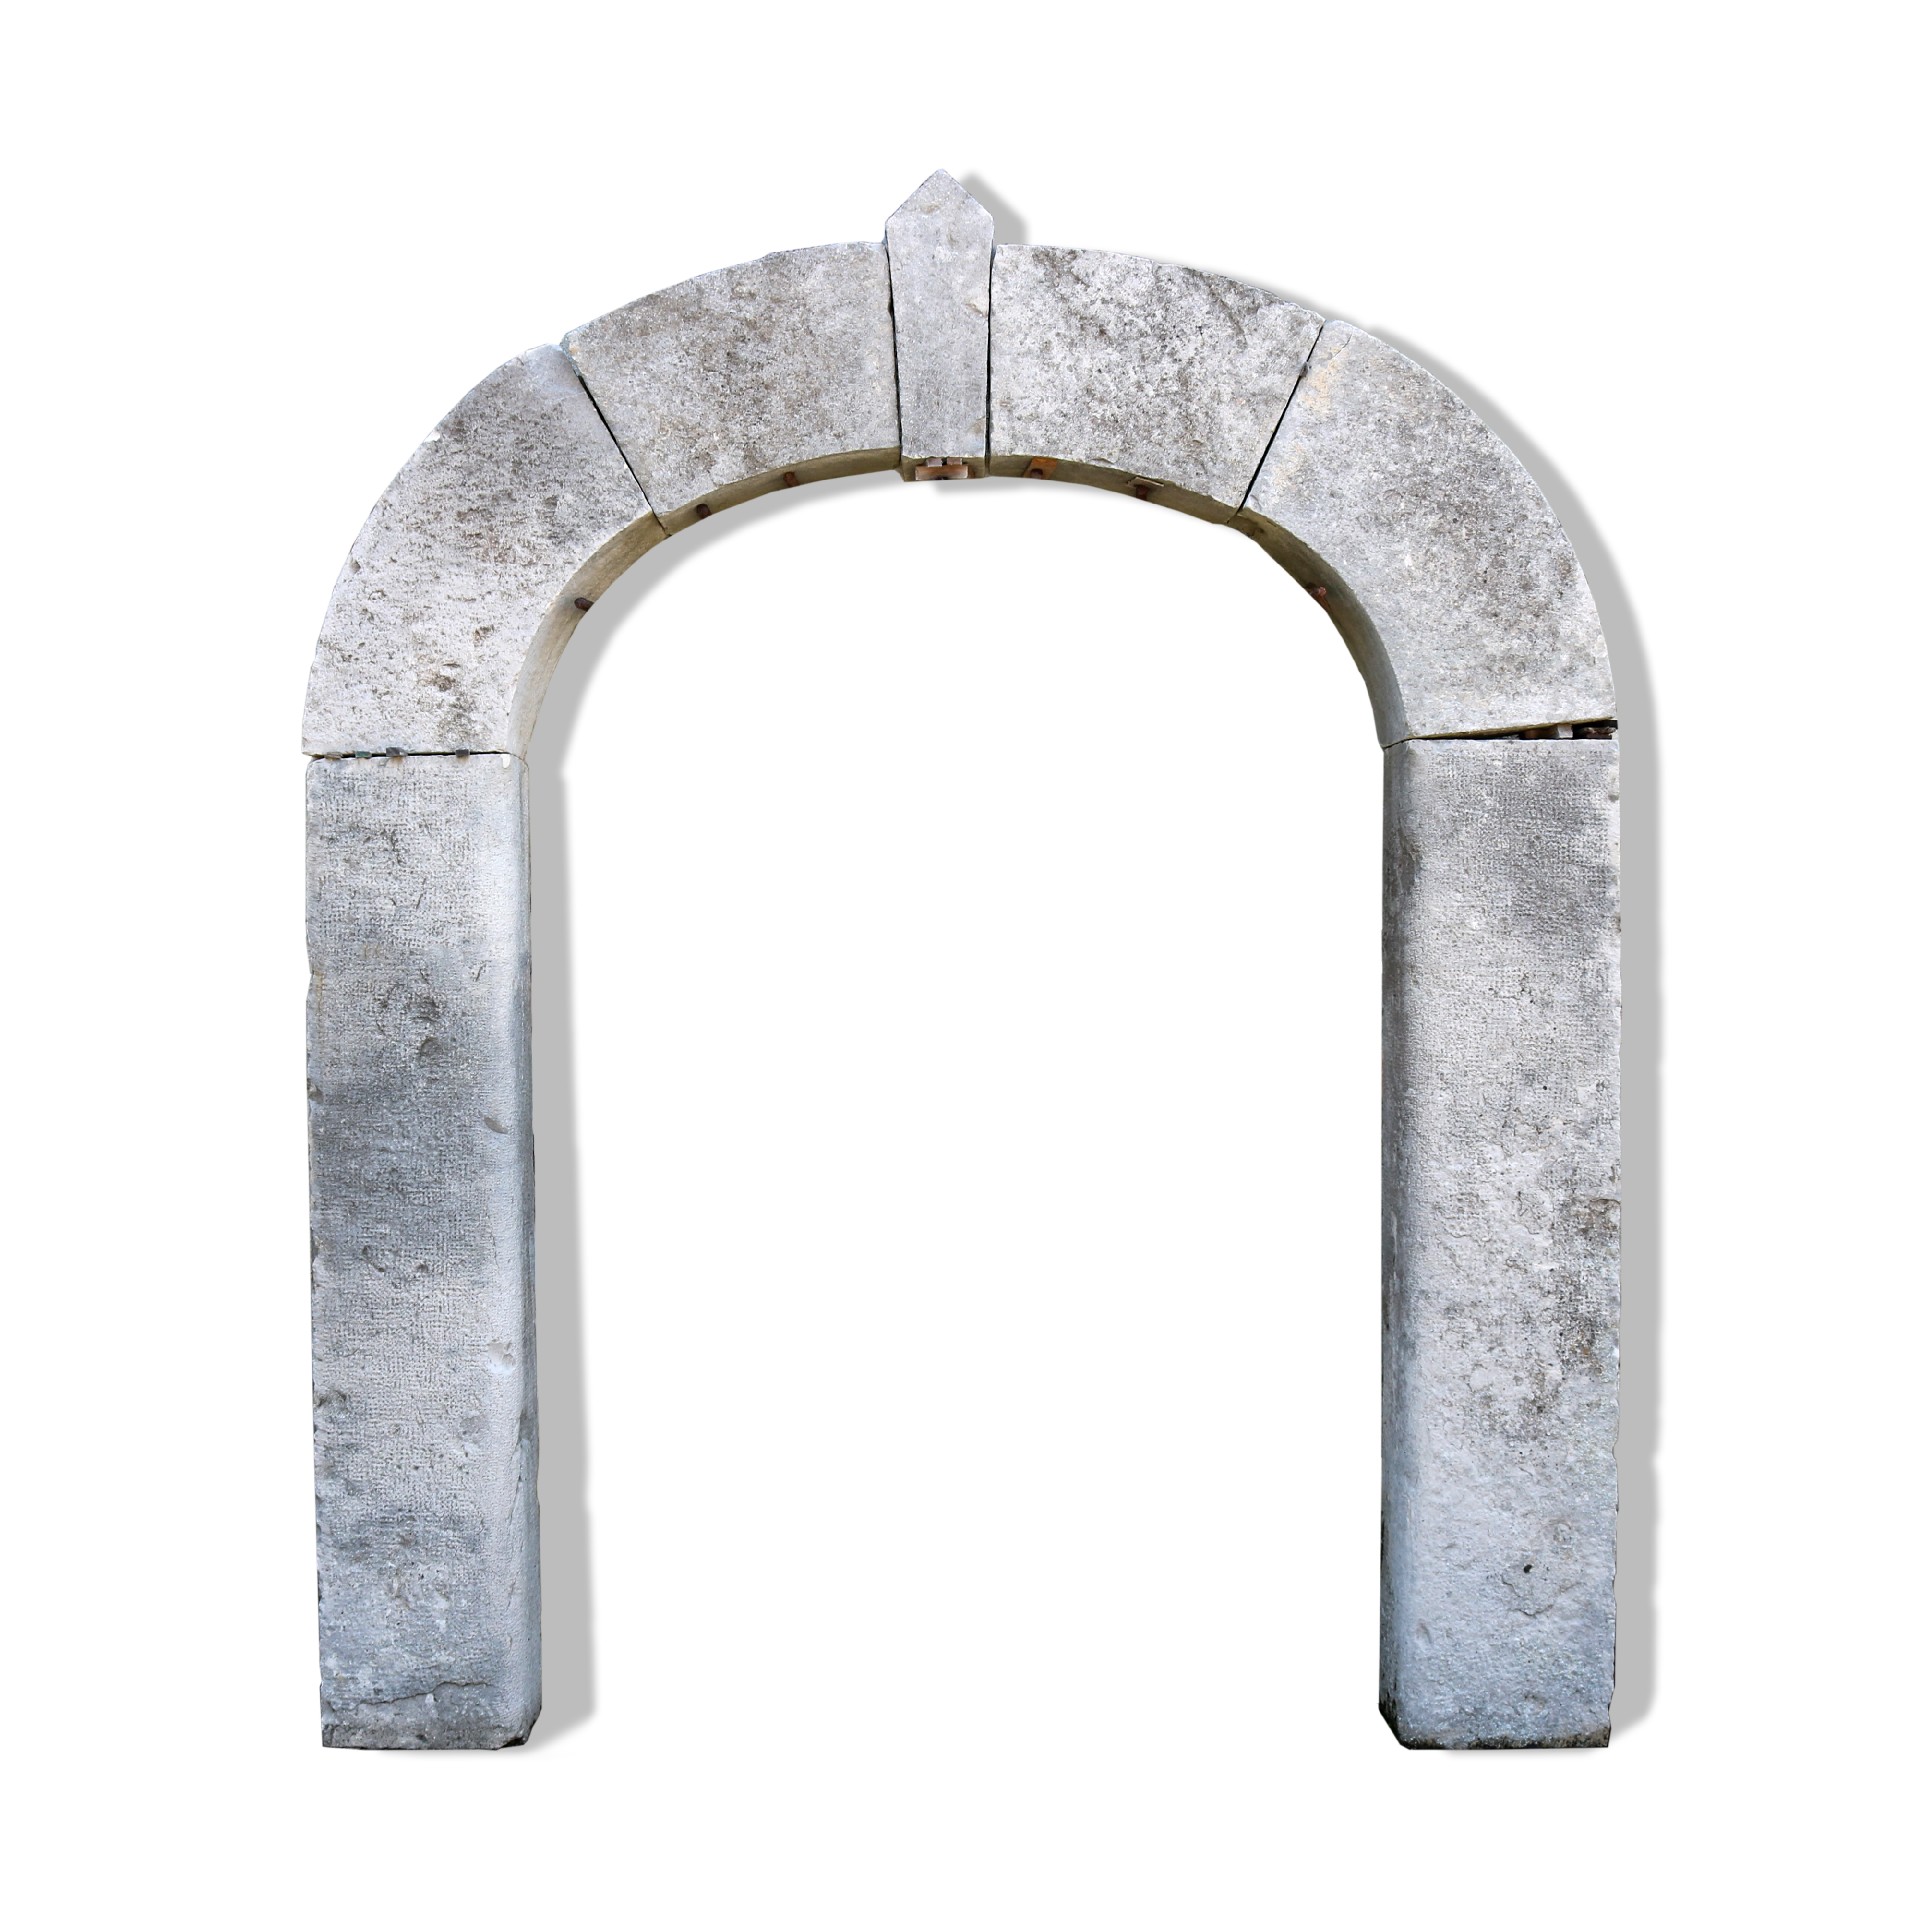 Antico portale in pietra. Epoca 1800. - Portali, Finestre e Cornici - Architettura - Prodotti - Antichità Fiorillo